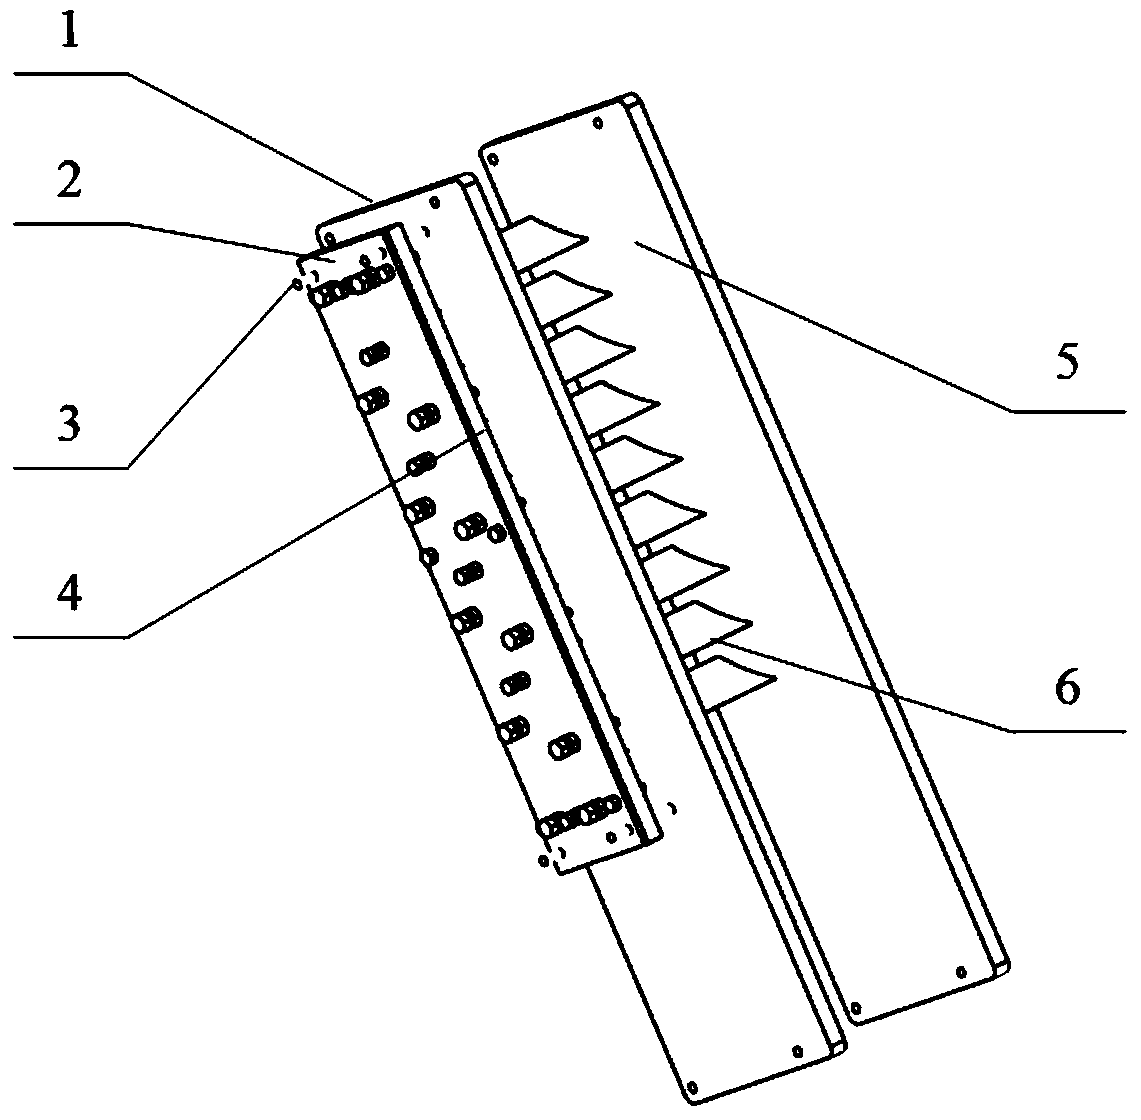 A cantilever variable-gap plane cascade experimental device